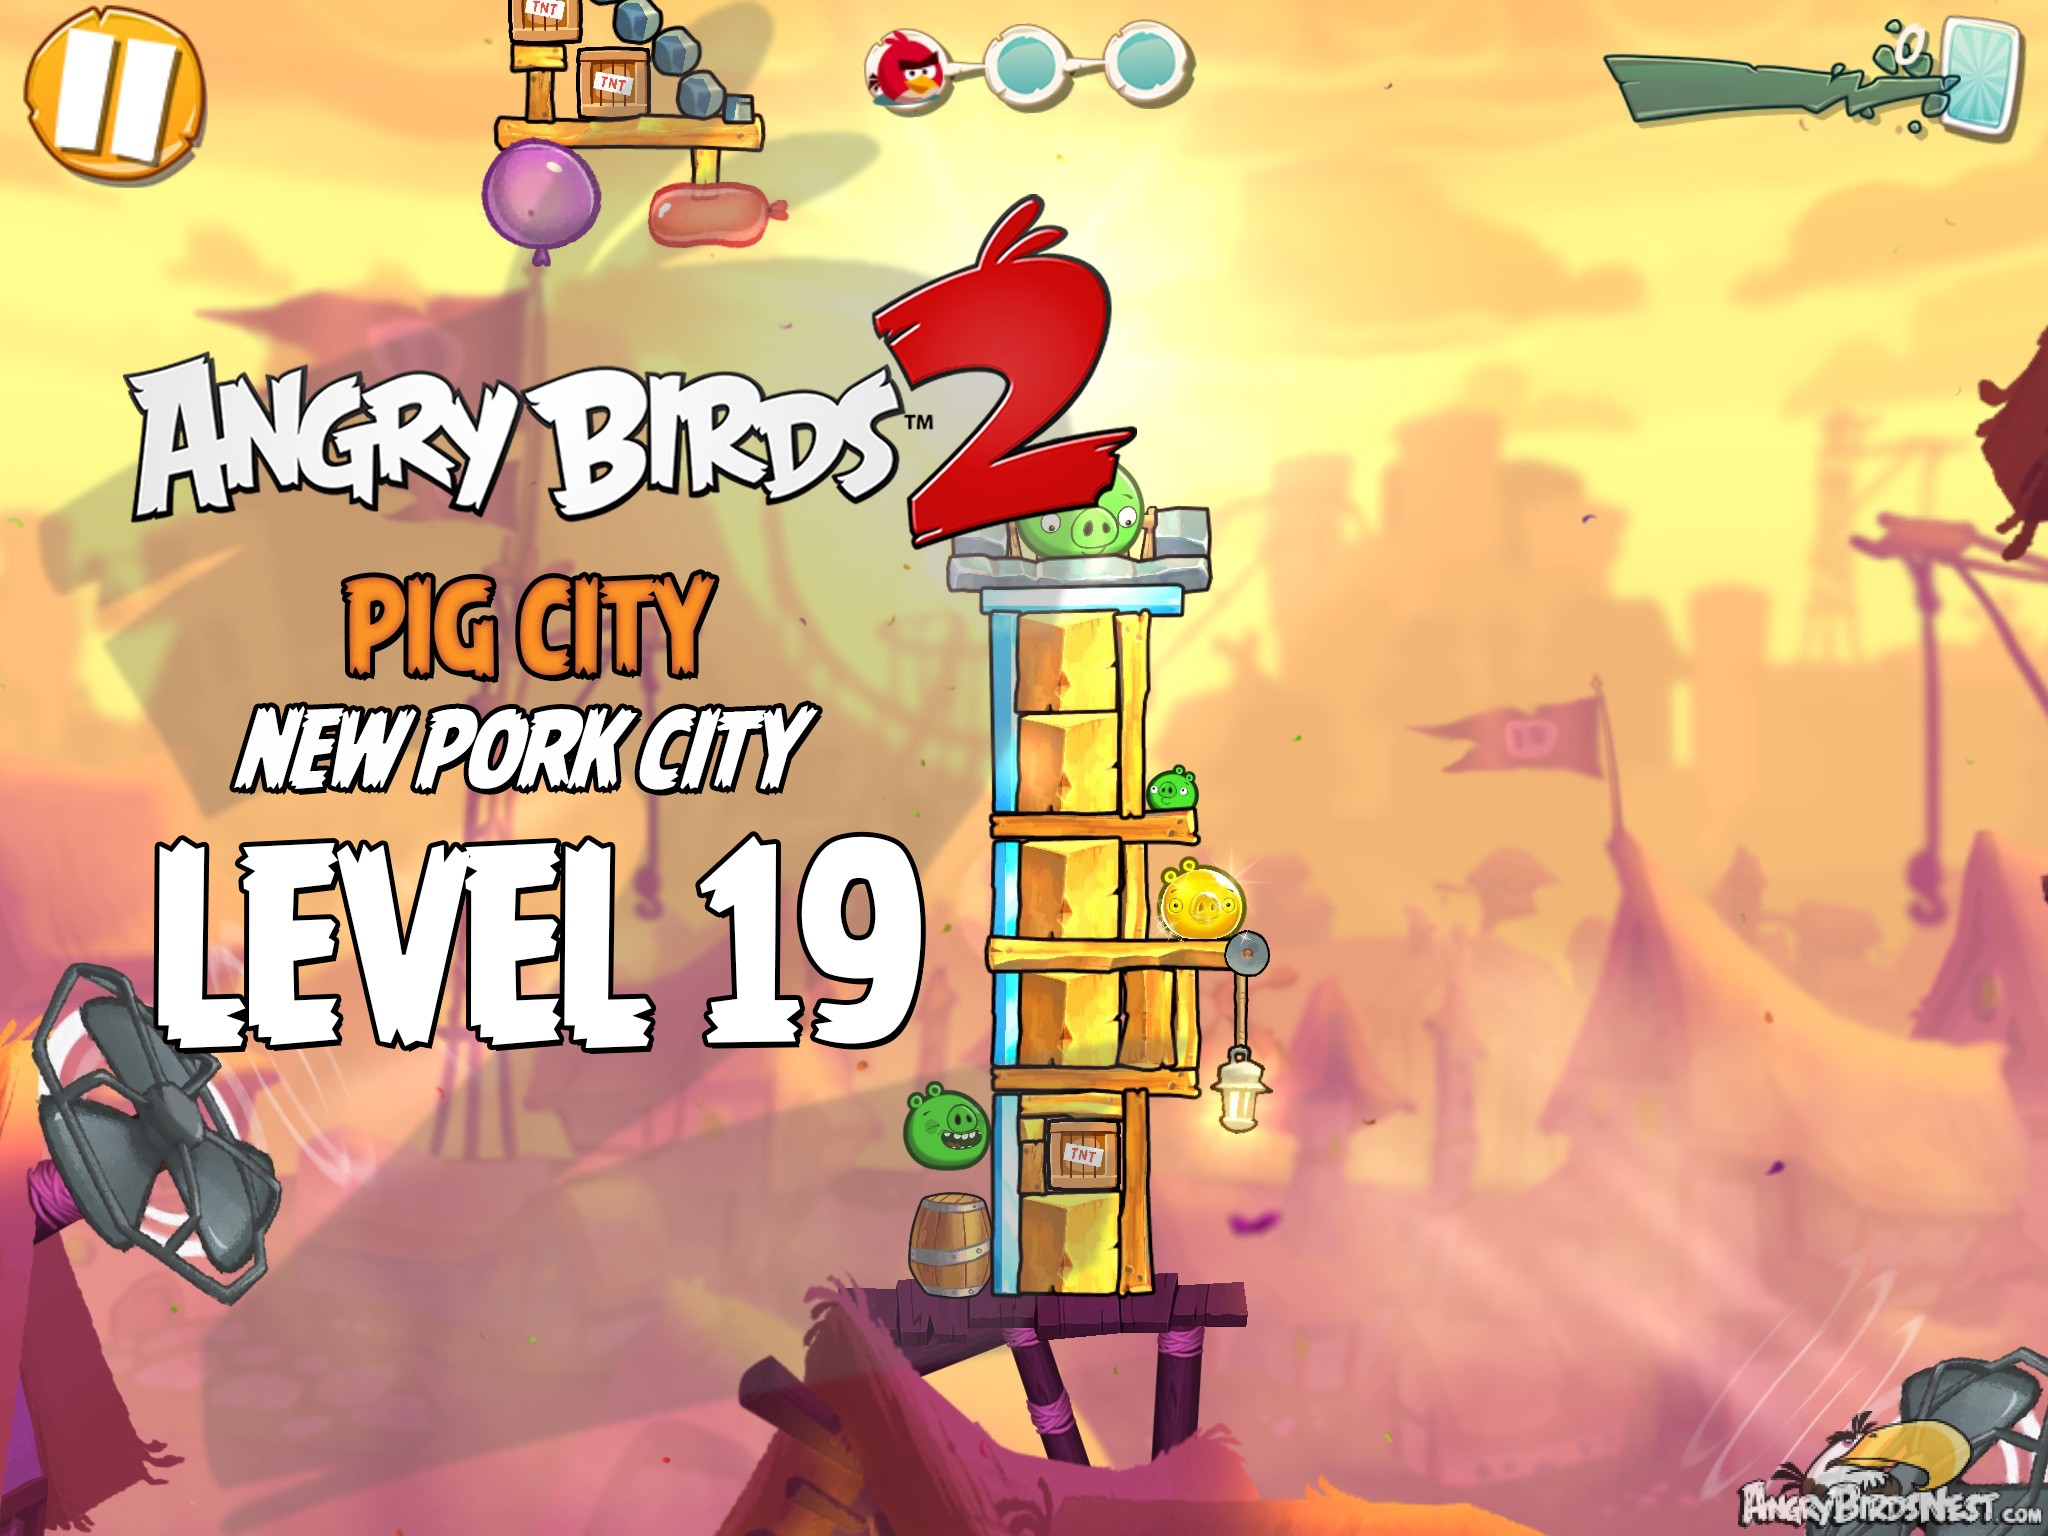 Angry Birds 2 Pig City New Pork City Level 19